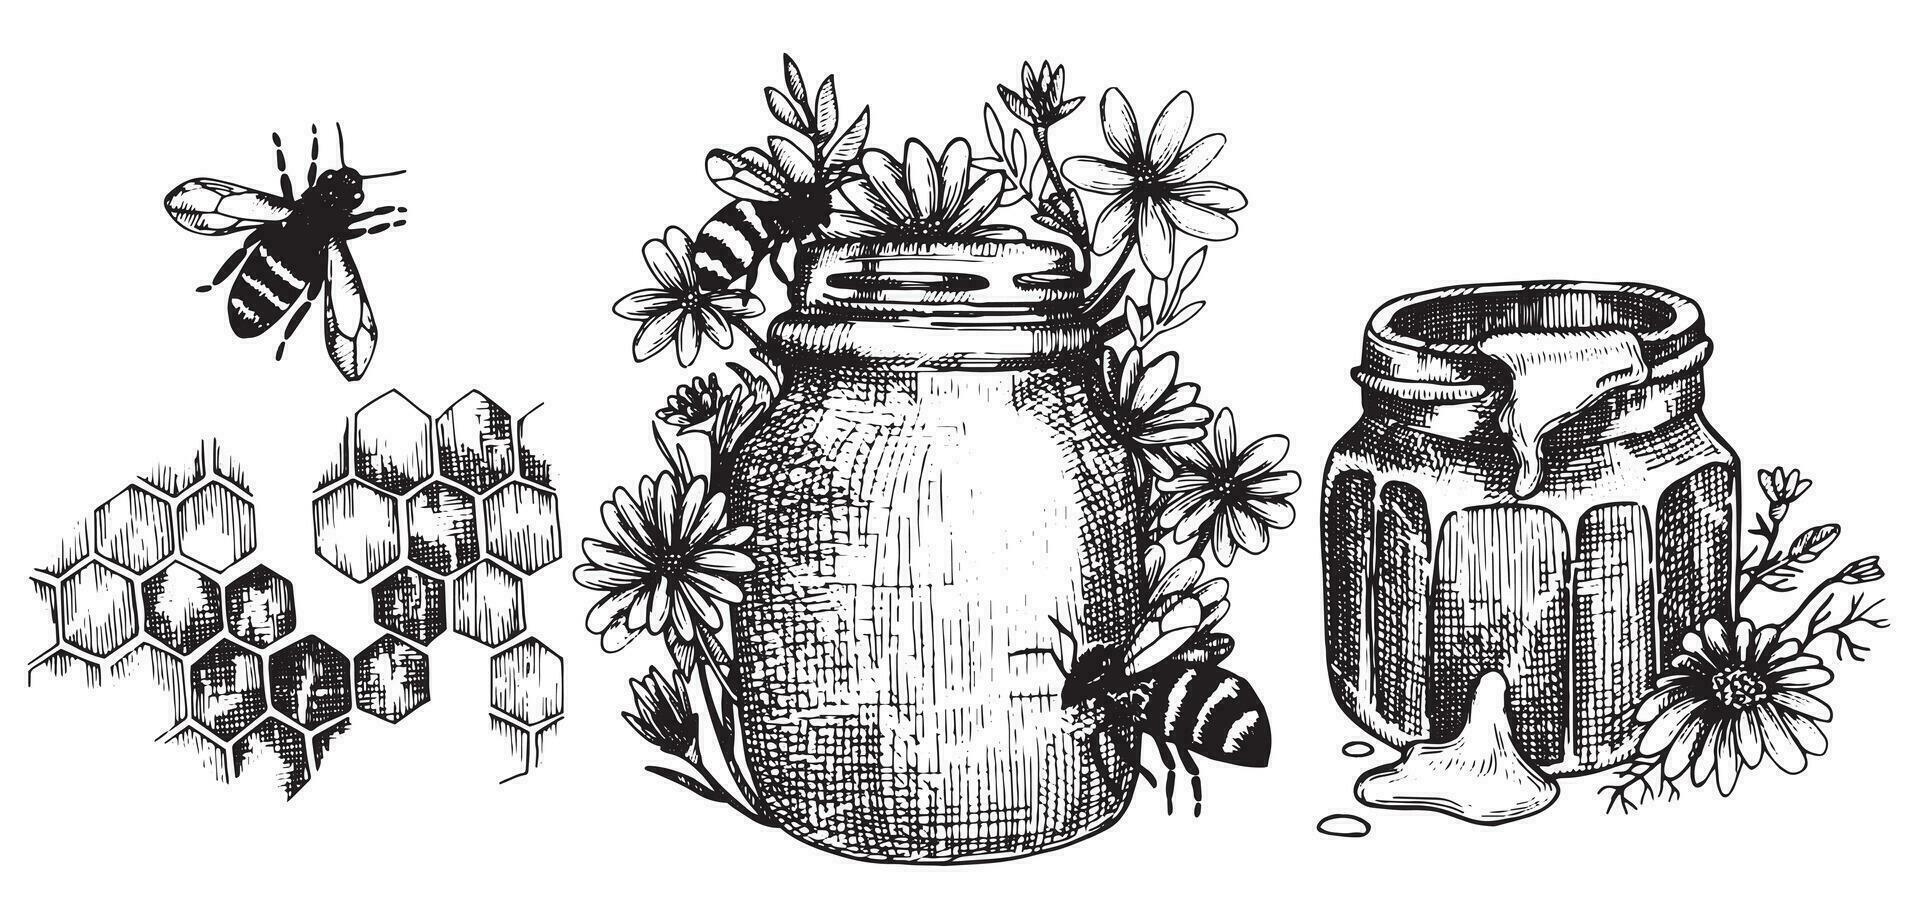 desenho vetorial vintage sobre o tema do mel, apicultura. gráficos de ilustração preto e branco, esboço. mel, favos de mel, abelhas. vetor